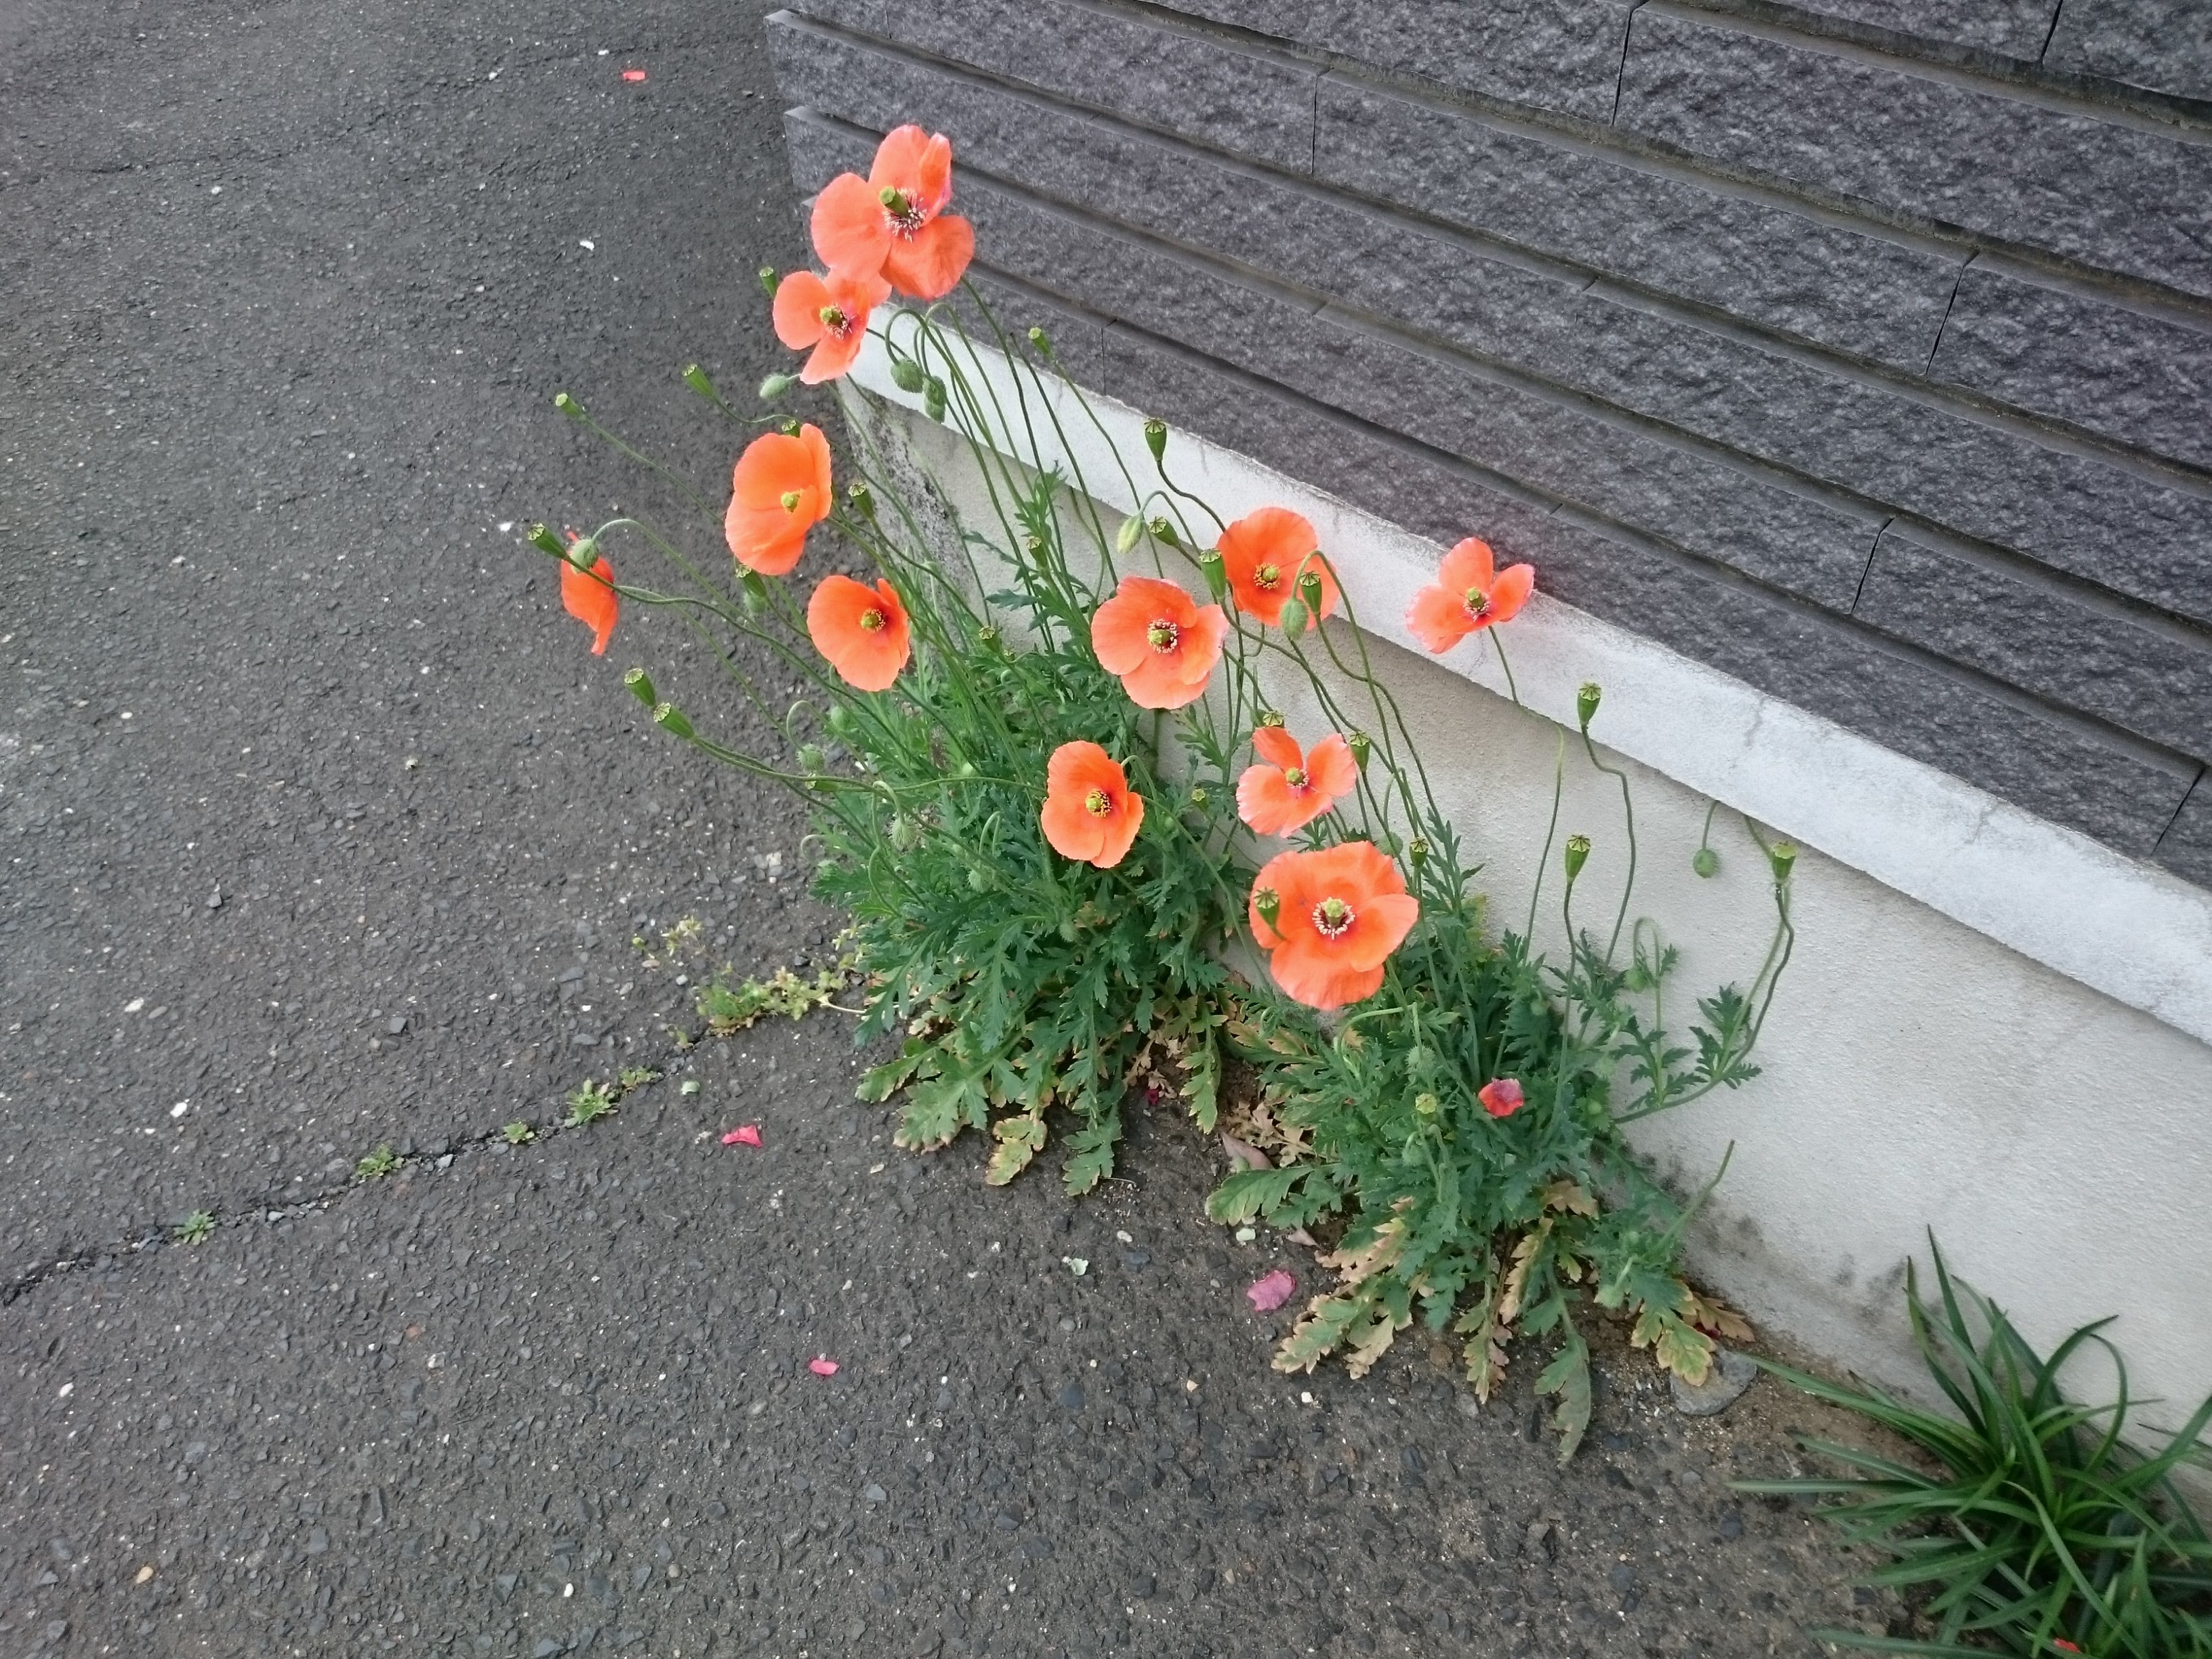 環境いばらき 道路脇にオレンジ色のきれいな花 が咲き始めました とてもきれいですが ここ数年道路脇で増えている ナガミヒナゲシ という外来種の植物です 道路にはこのような外来種がとても増えています T Co 1l5rz78bed Twitter